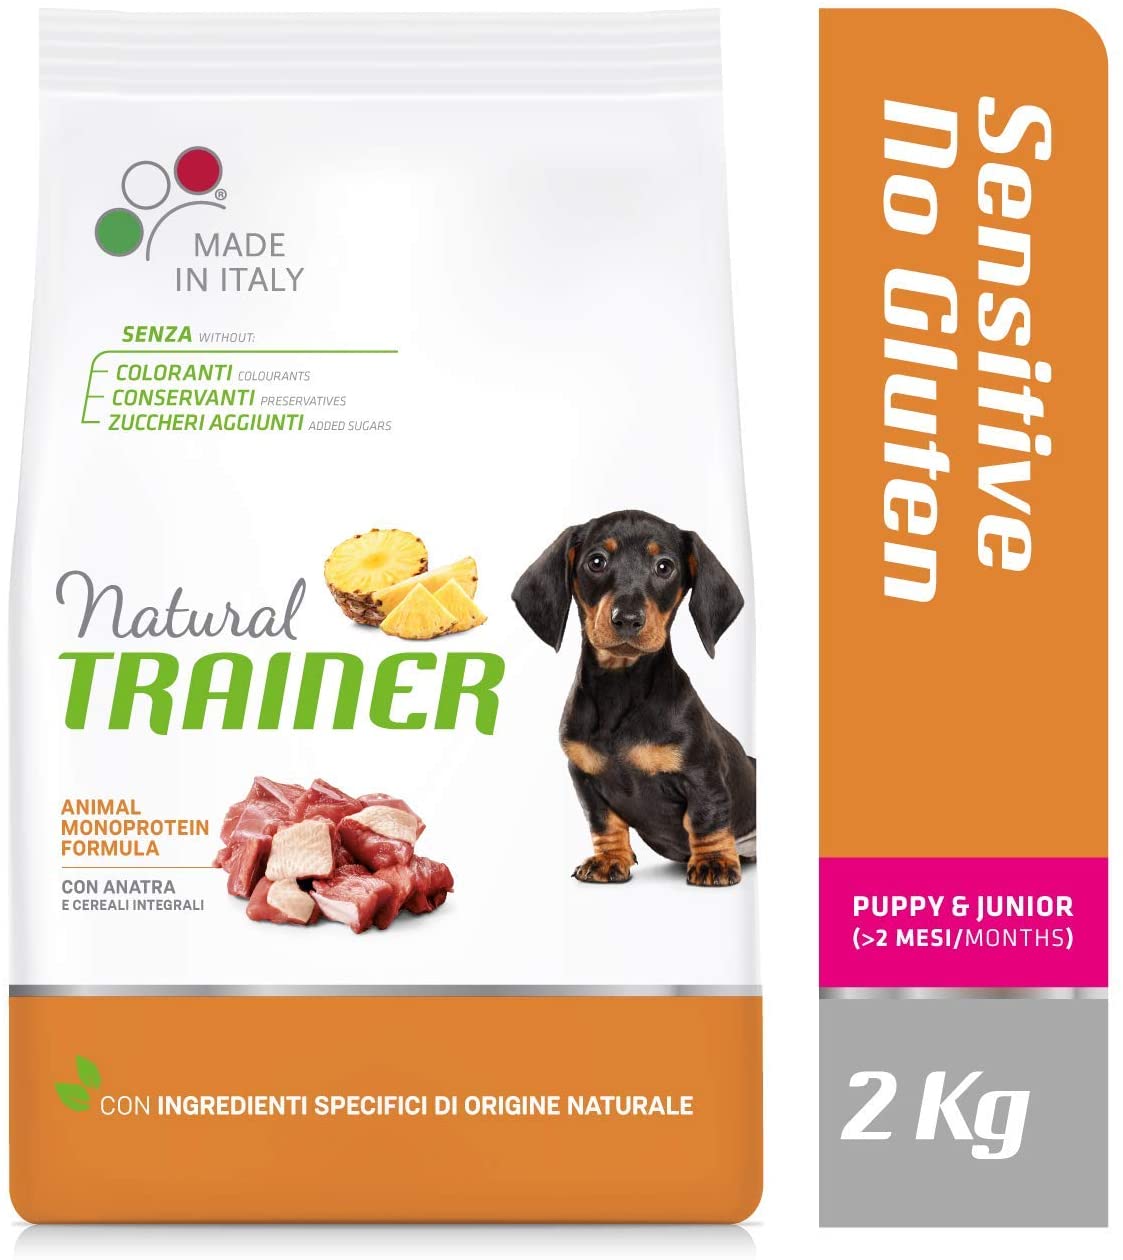 Natural Trainer Cibo per Cani Small & Toy Adult con Maiale e Cereali Integrali, 2kg